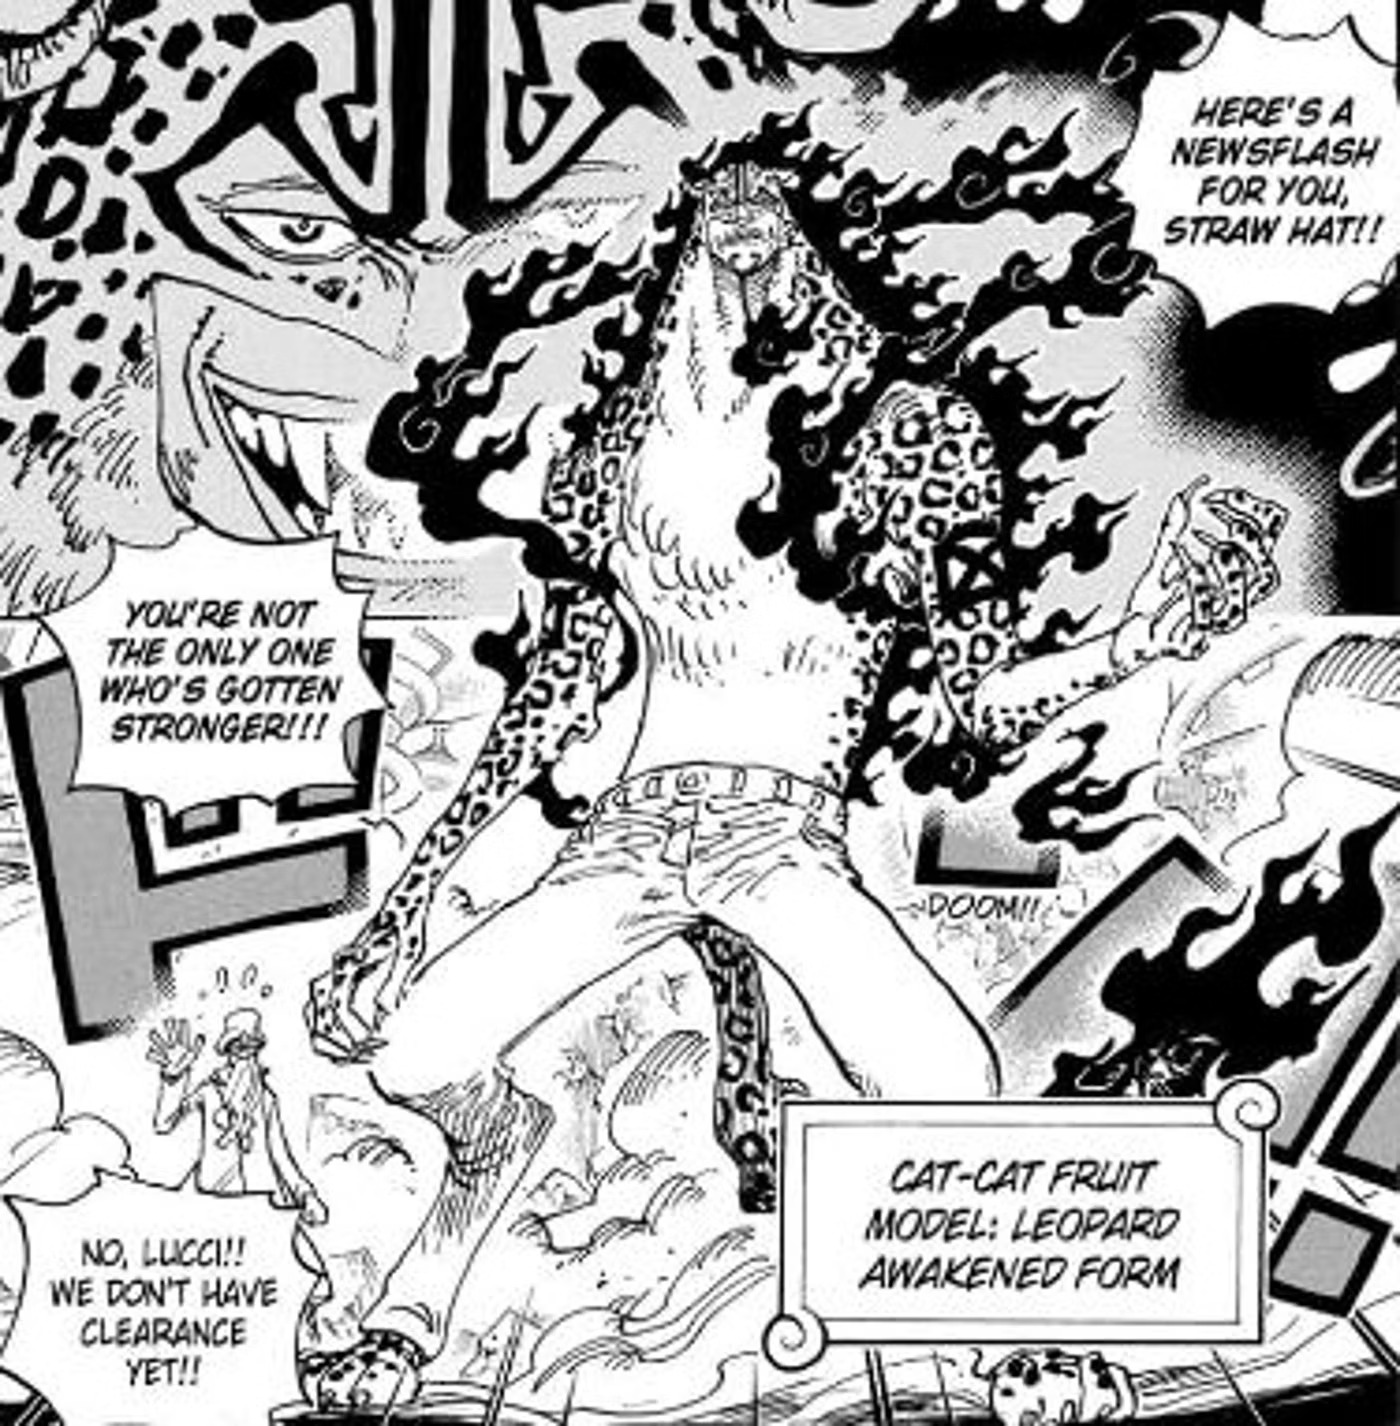 Afinal, a Akuma no Mi do Kaido já despertou em One Piece